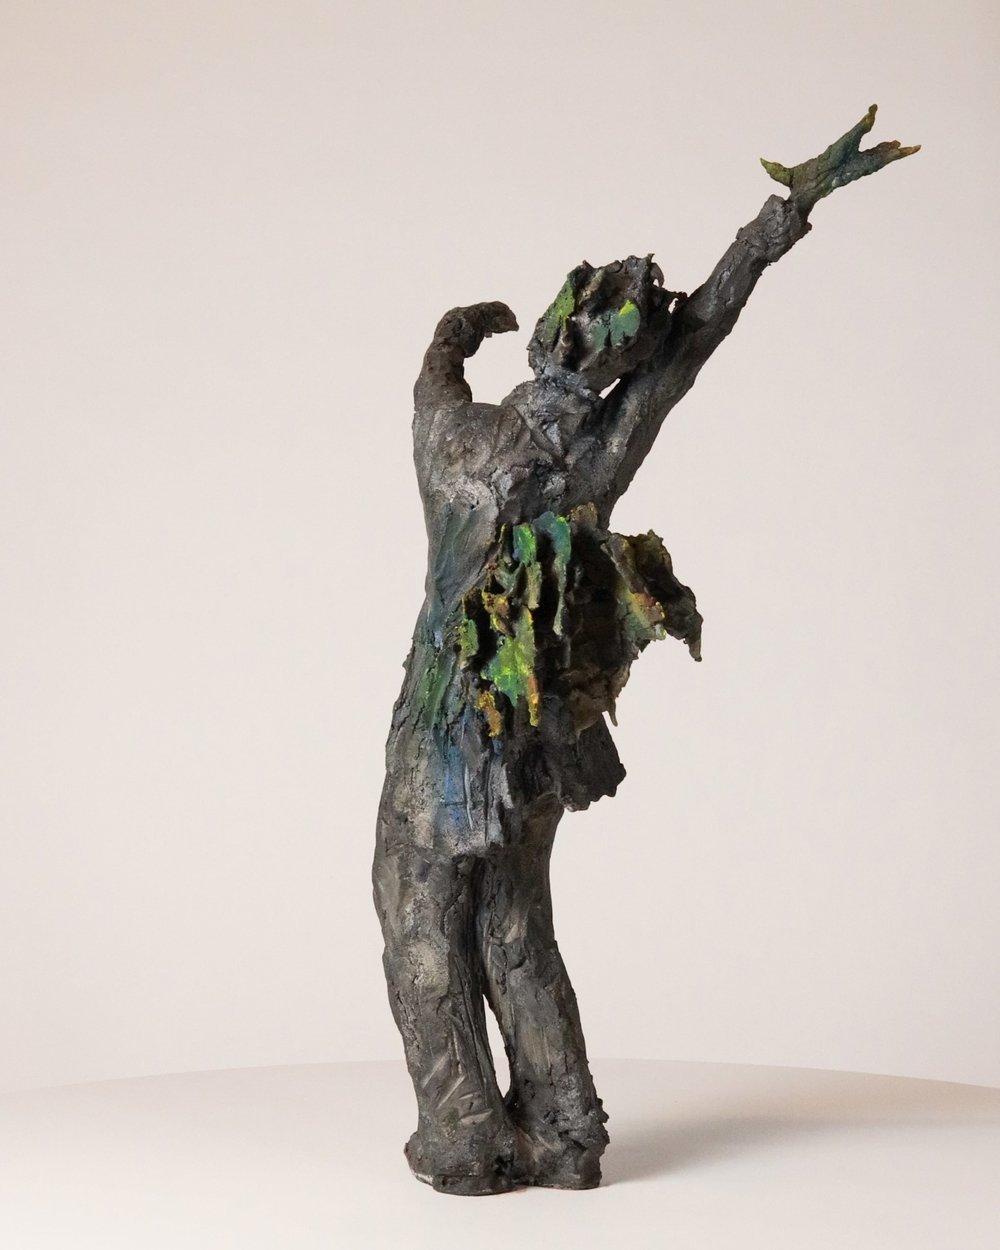 Carafe à oiseaux de Ccile Raynal - Figure masculine debout, sculpture en céramique - Contemporain Sculpture par Cécile Raynal